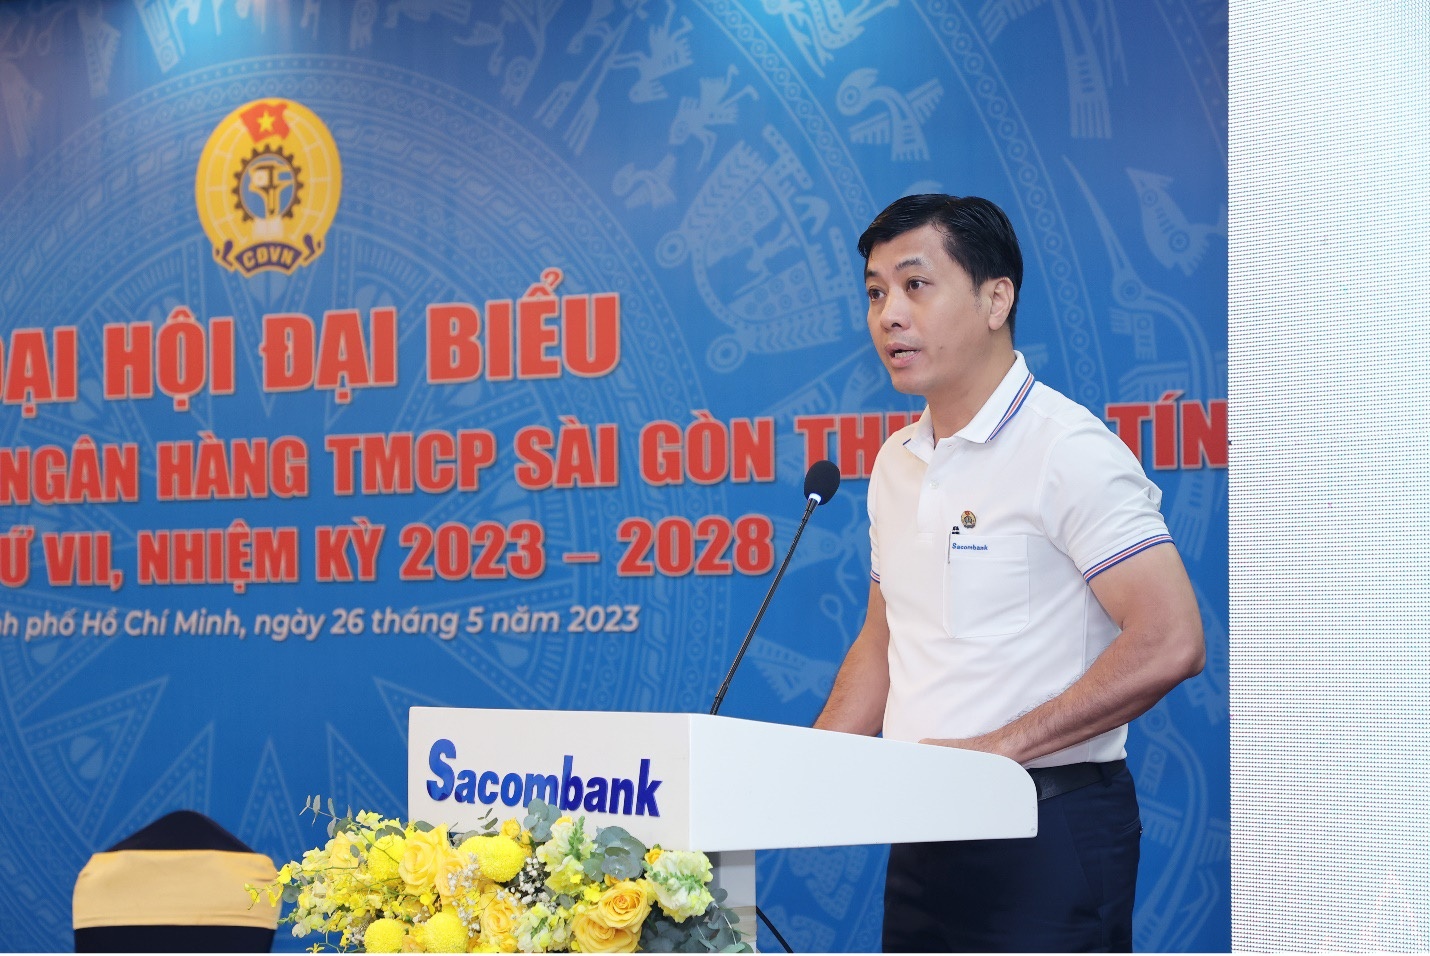 Ông Lê Đức Thịnh thay mặt Ban chấp hành CĐCS Sacombank nhiệm kỳ 2019 - 2023 đọc báo cáo kiểm điểm hoạt động của Ban chấp hành